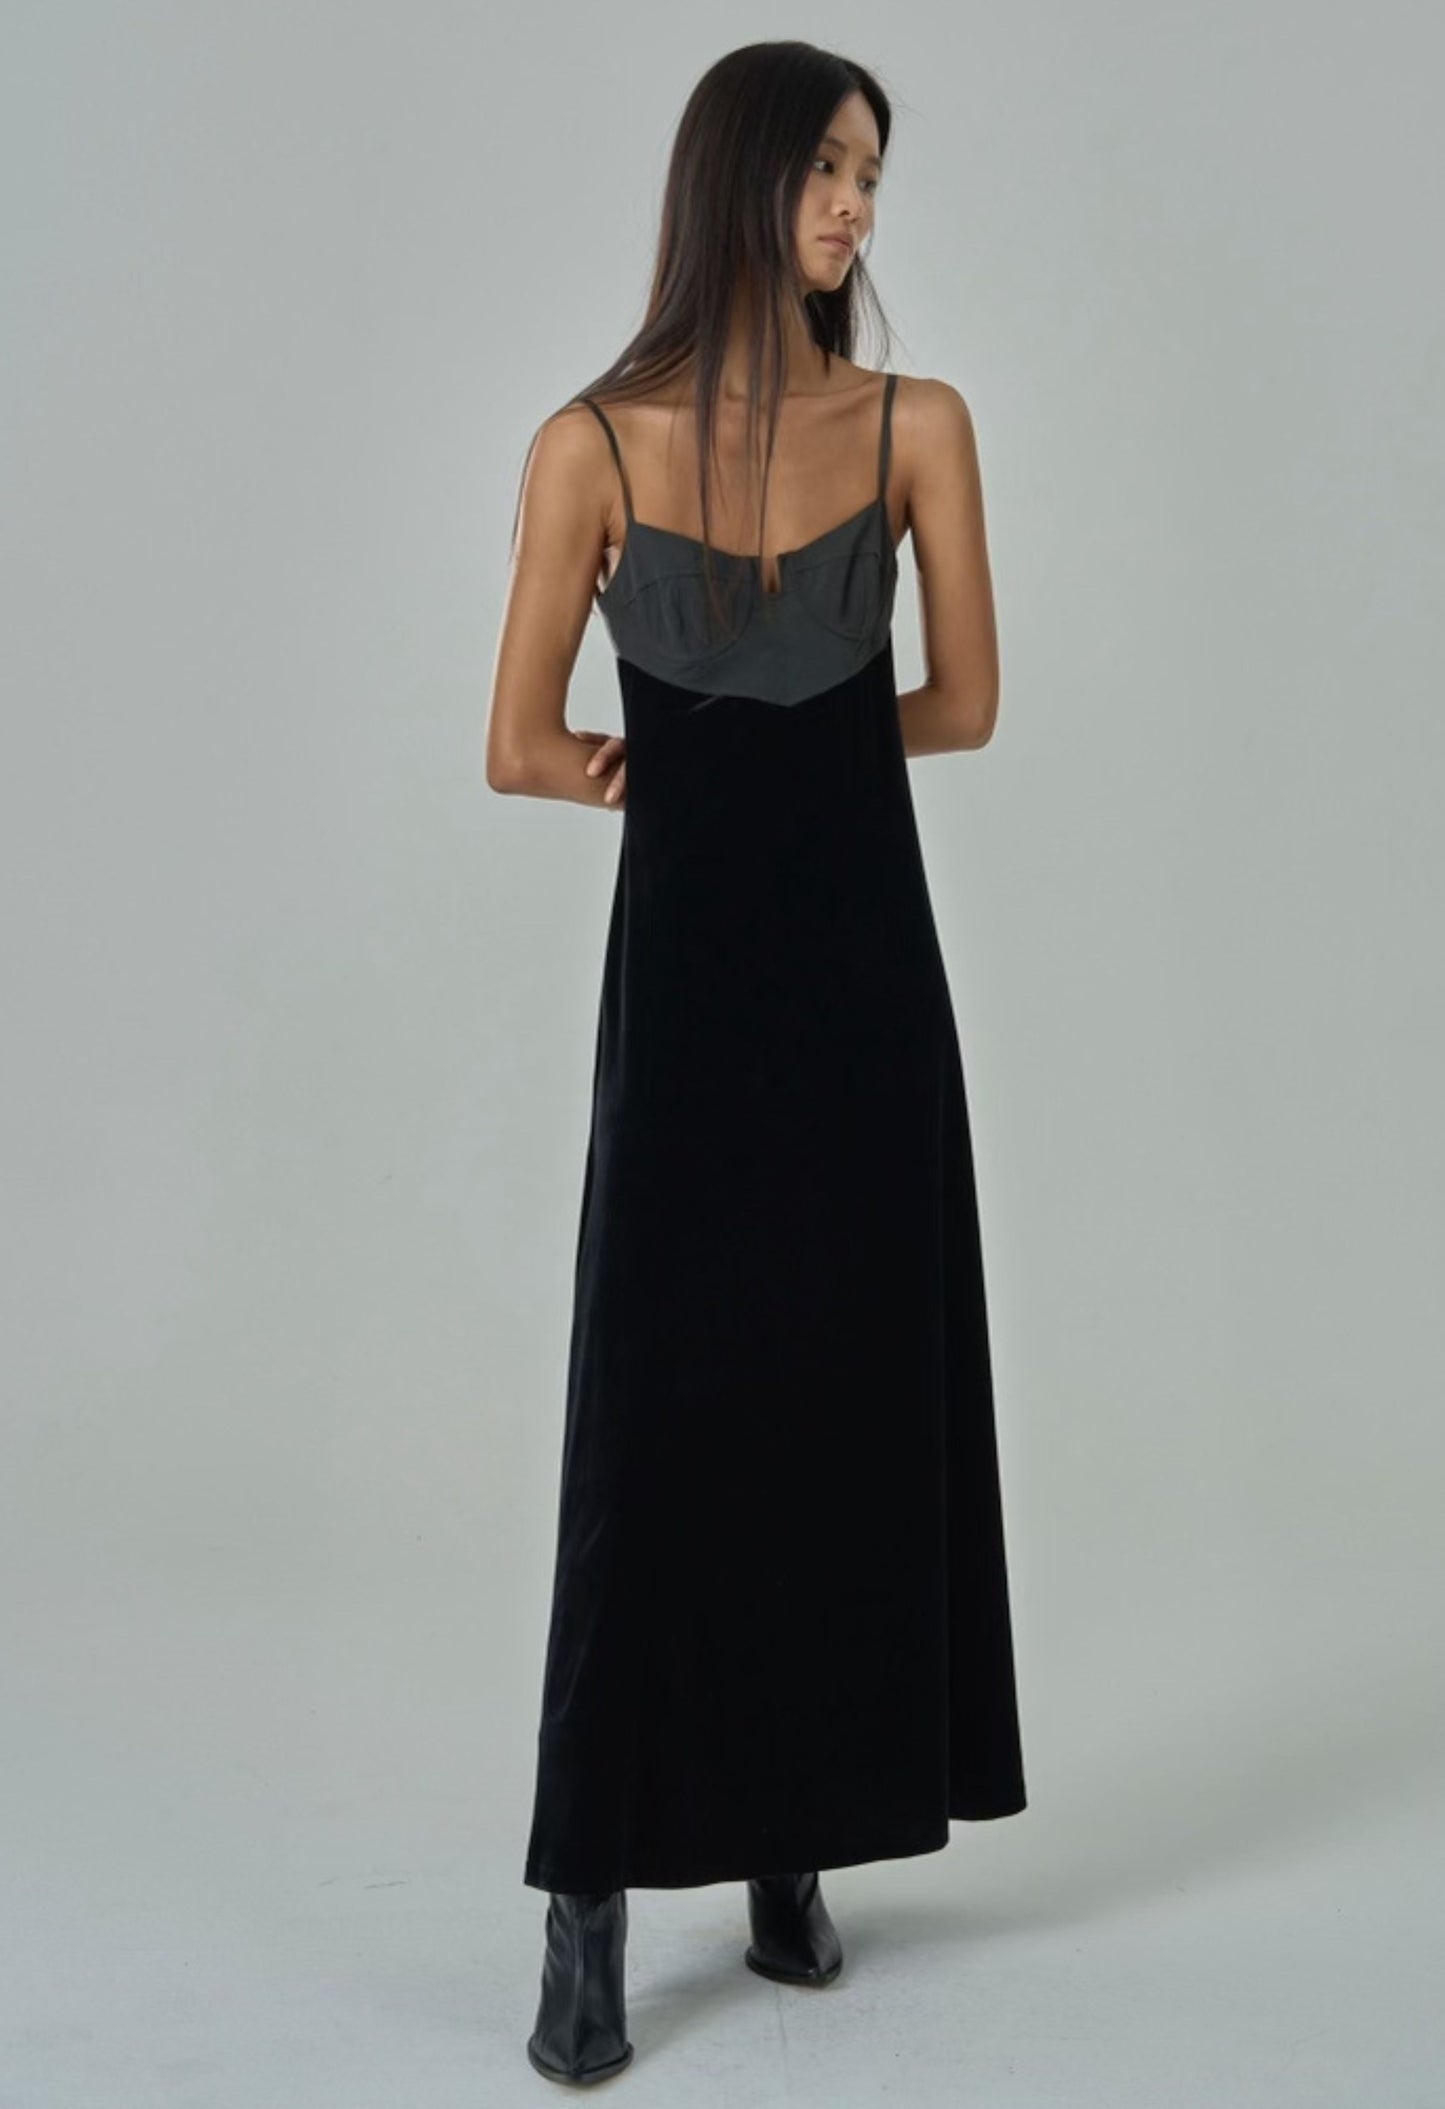 Avant Two-Toned Dress In Onyx